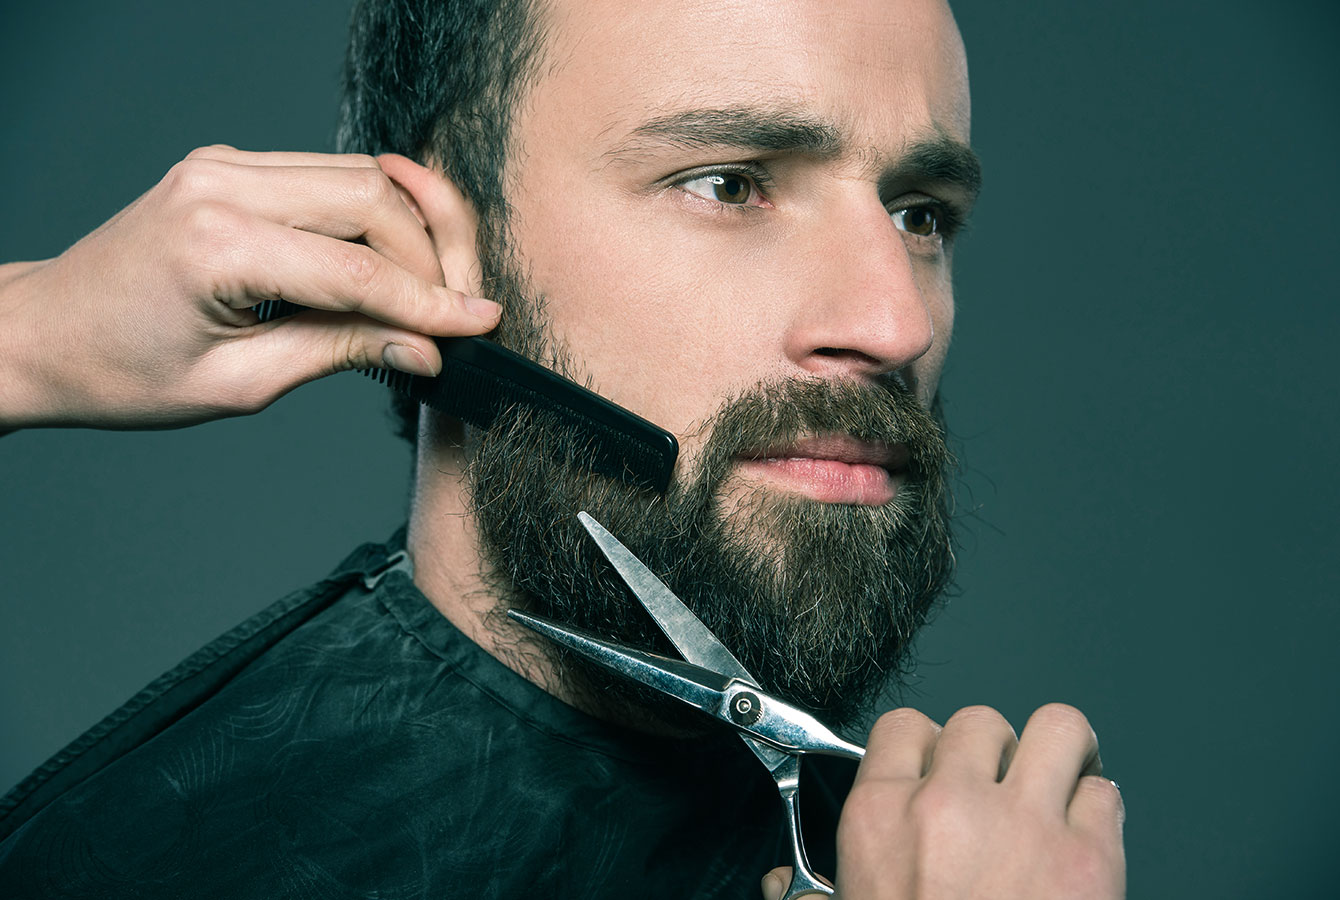 O barbeiro profissional está estilizando a barba do cliente.